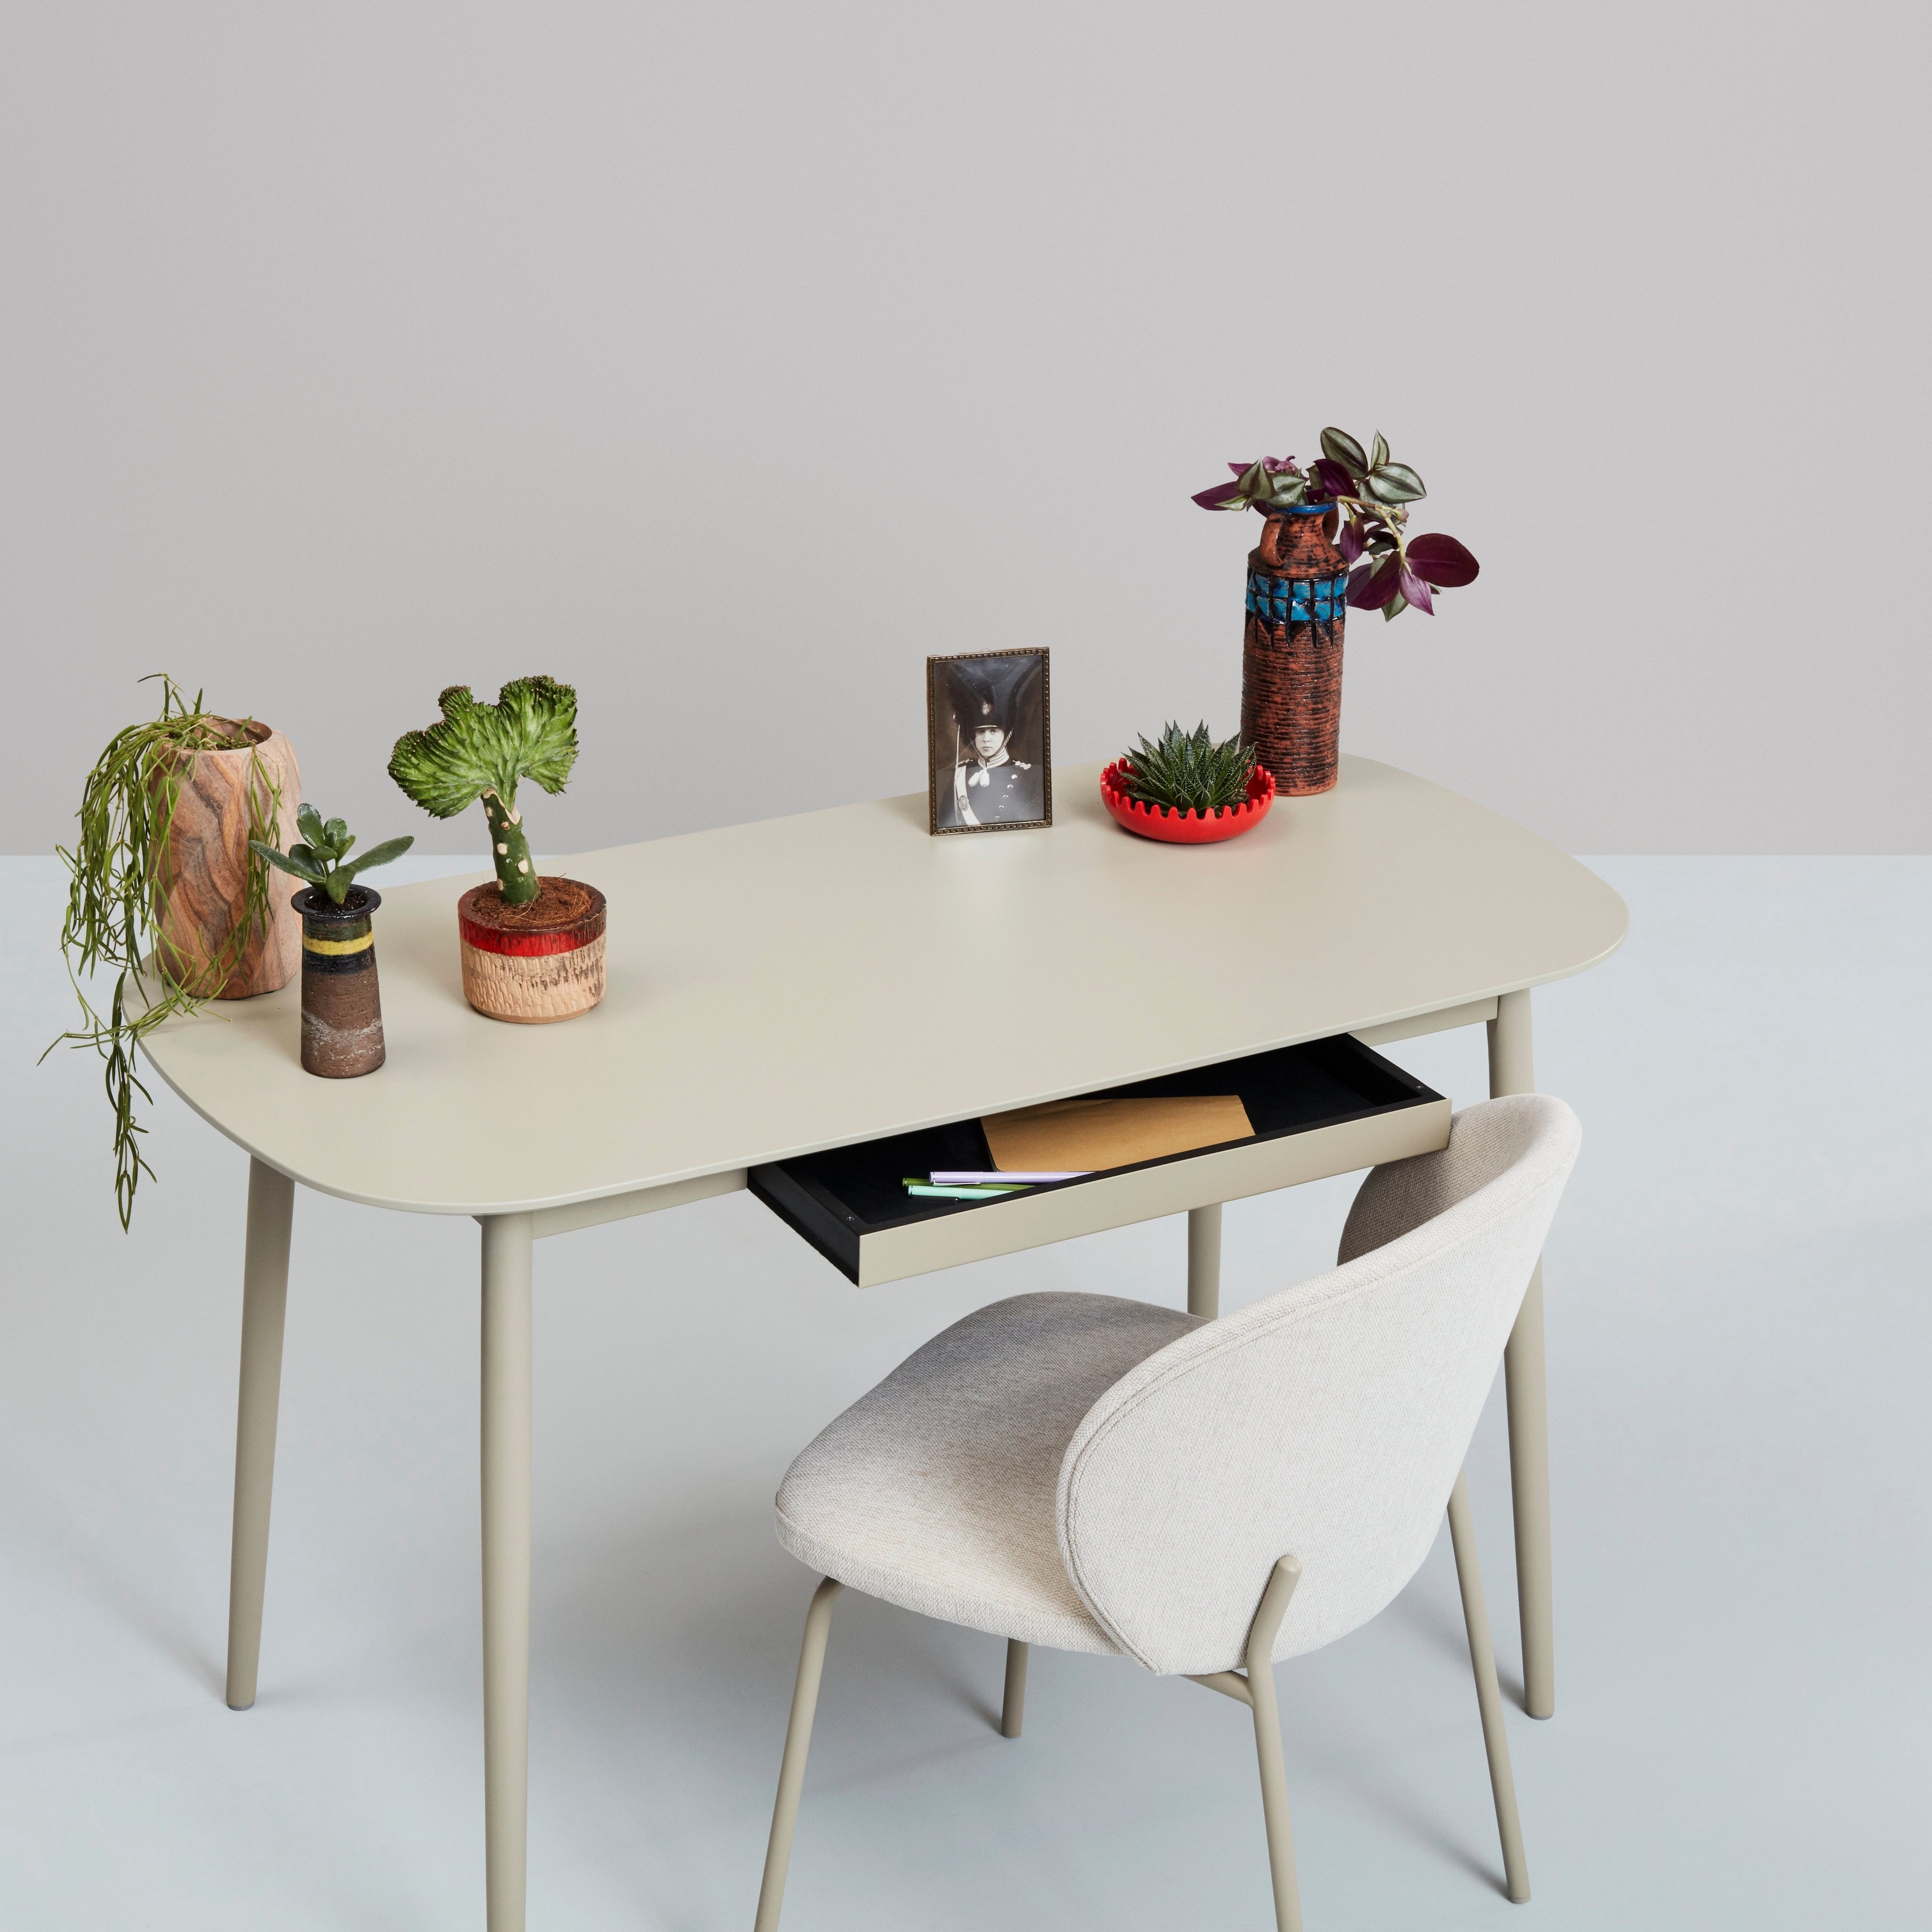 Wit bureau met planten, decoratieve items en een rstoel tegen een neutrale achtergrond.